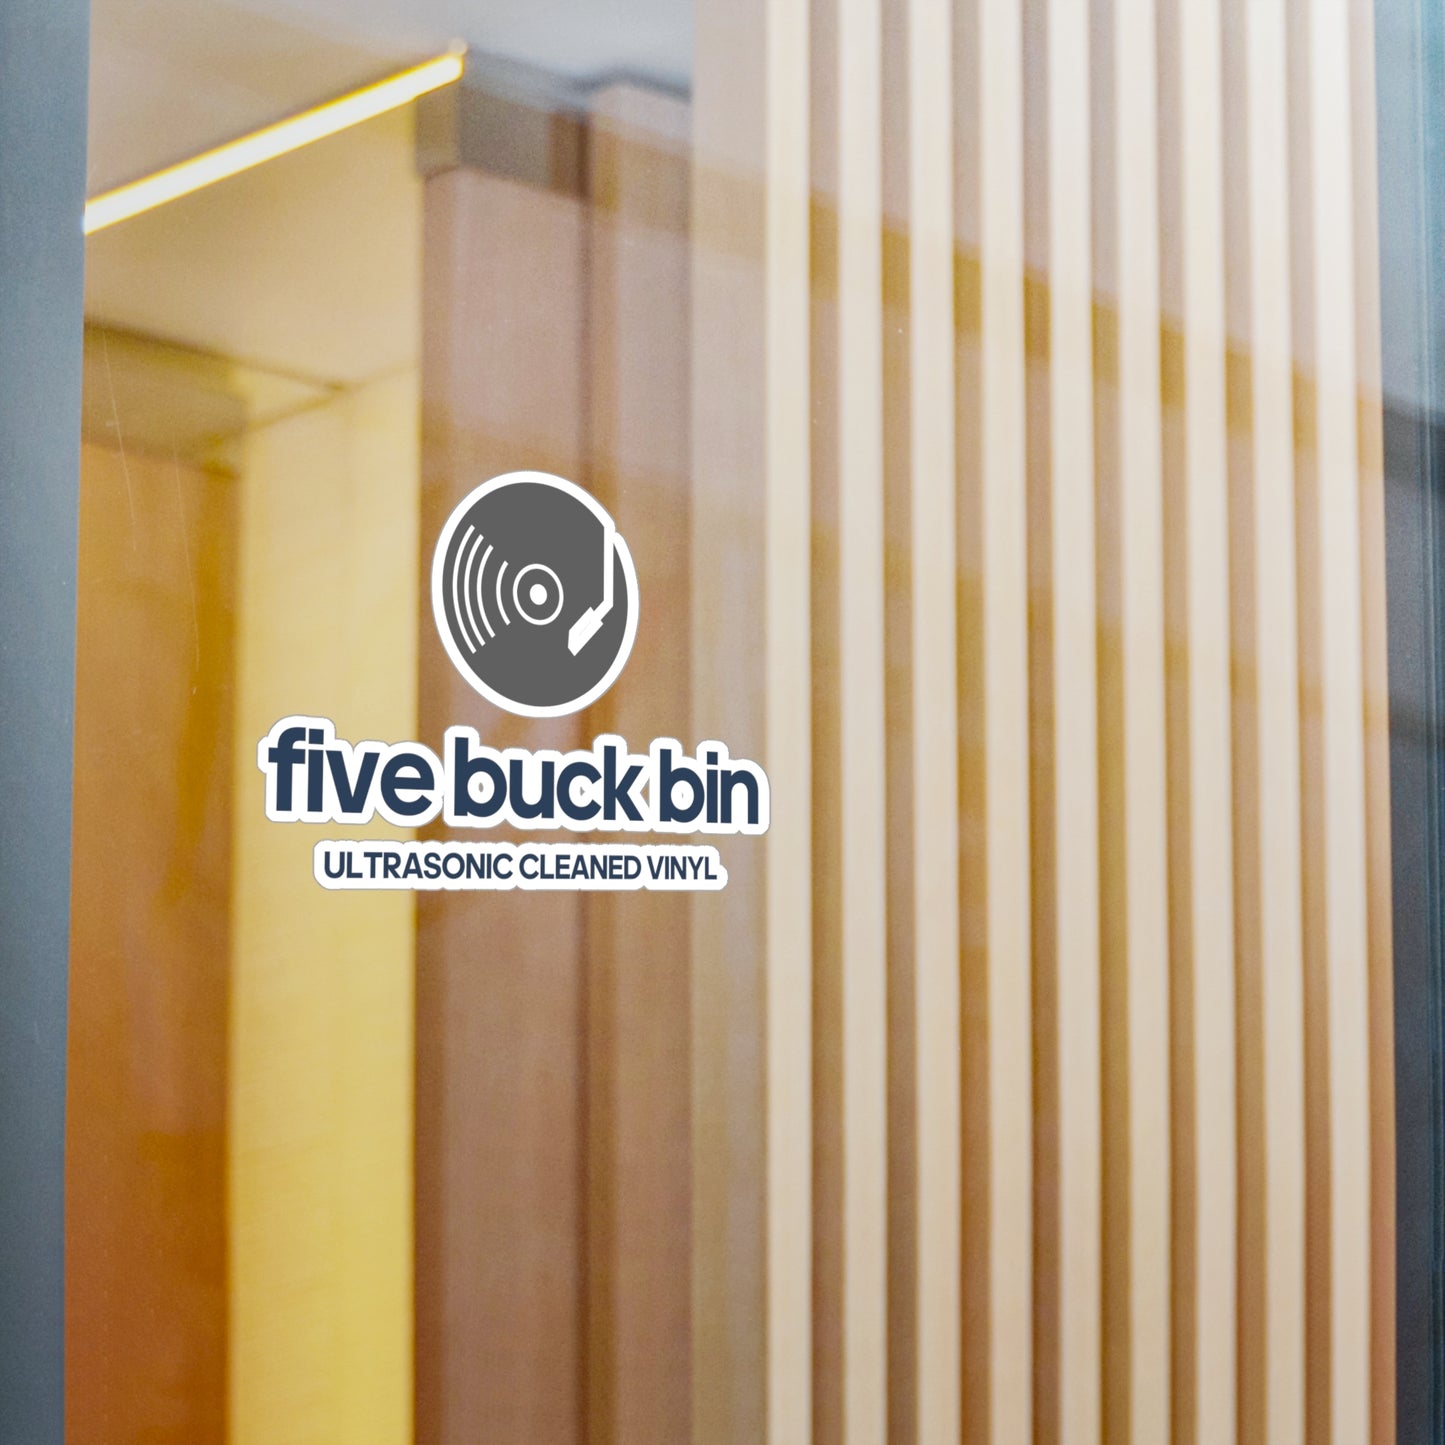 Five Buck Bin Vinyl Decal